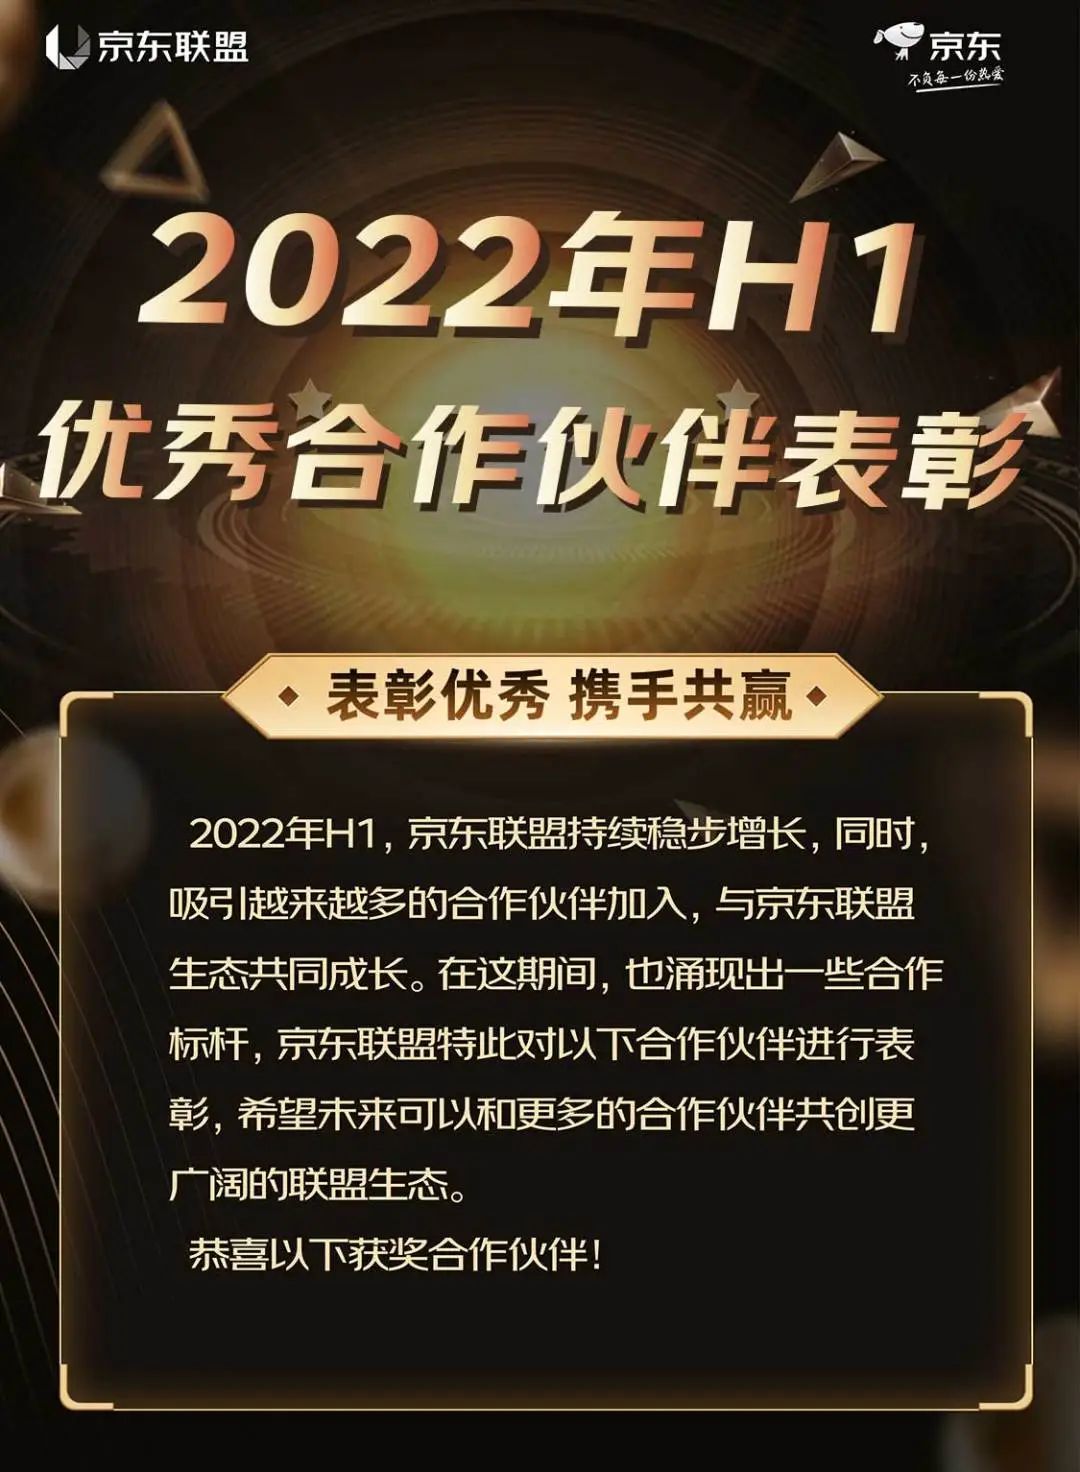 京东联盟2022年H1优秀合作伙伴表彰公示